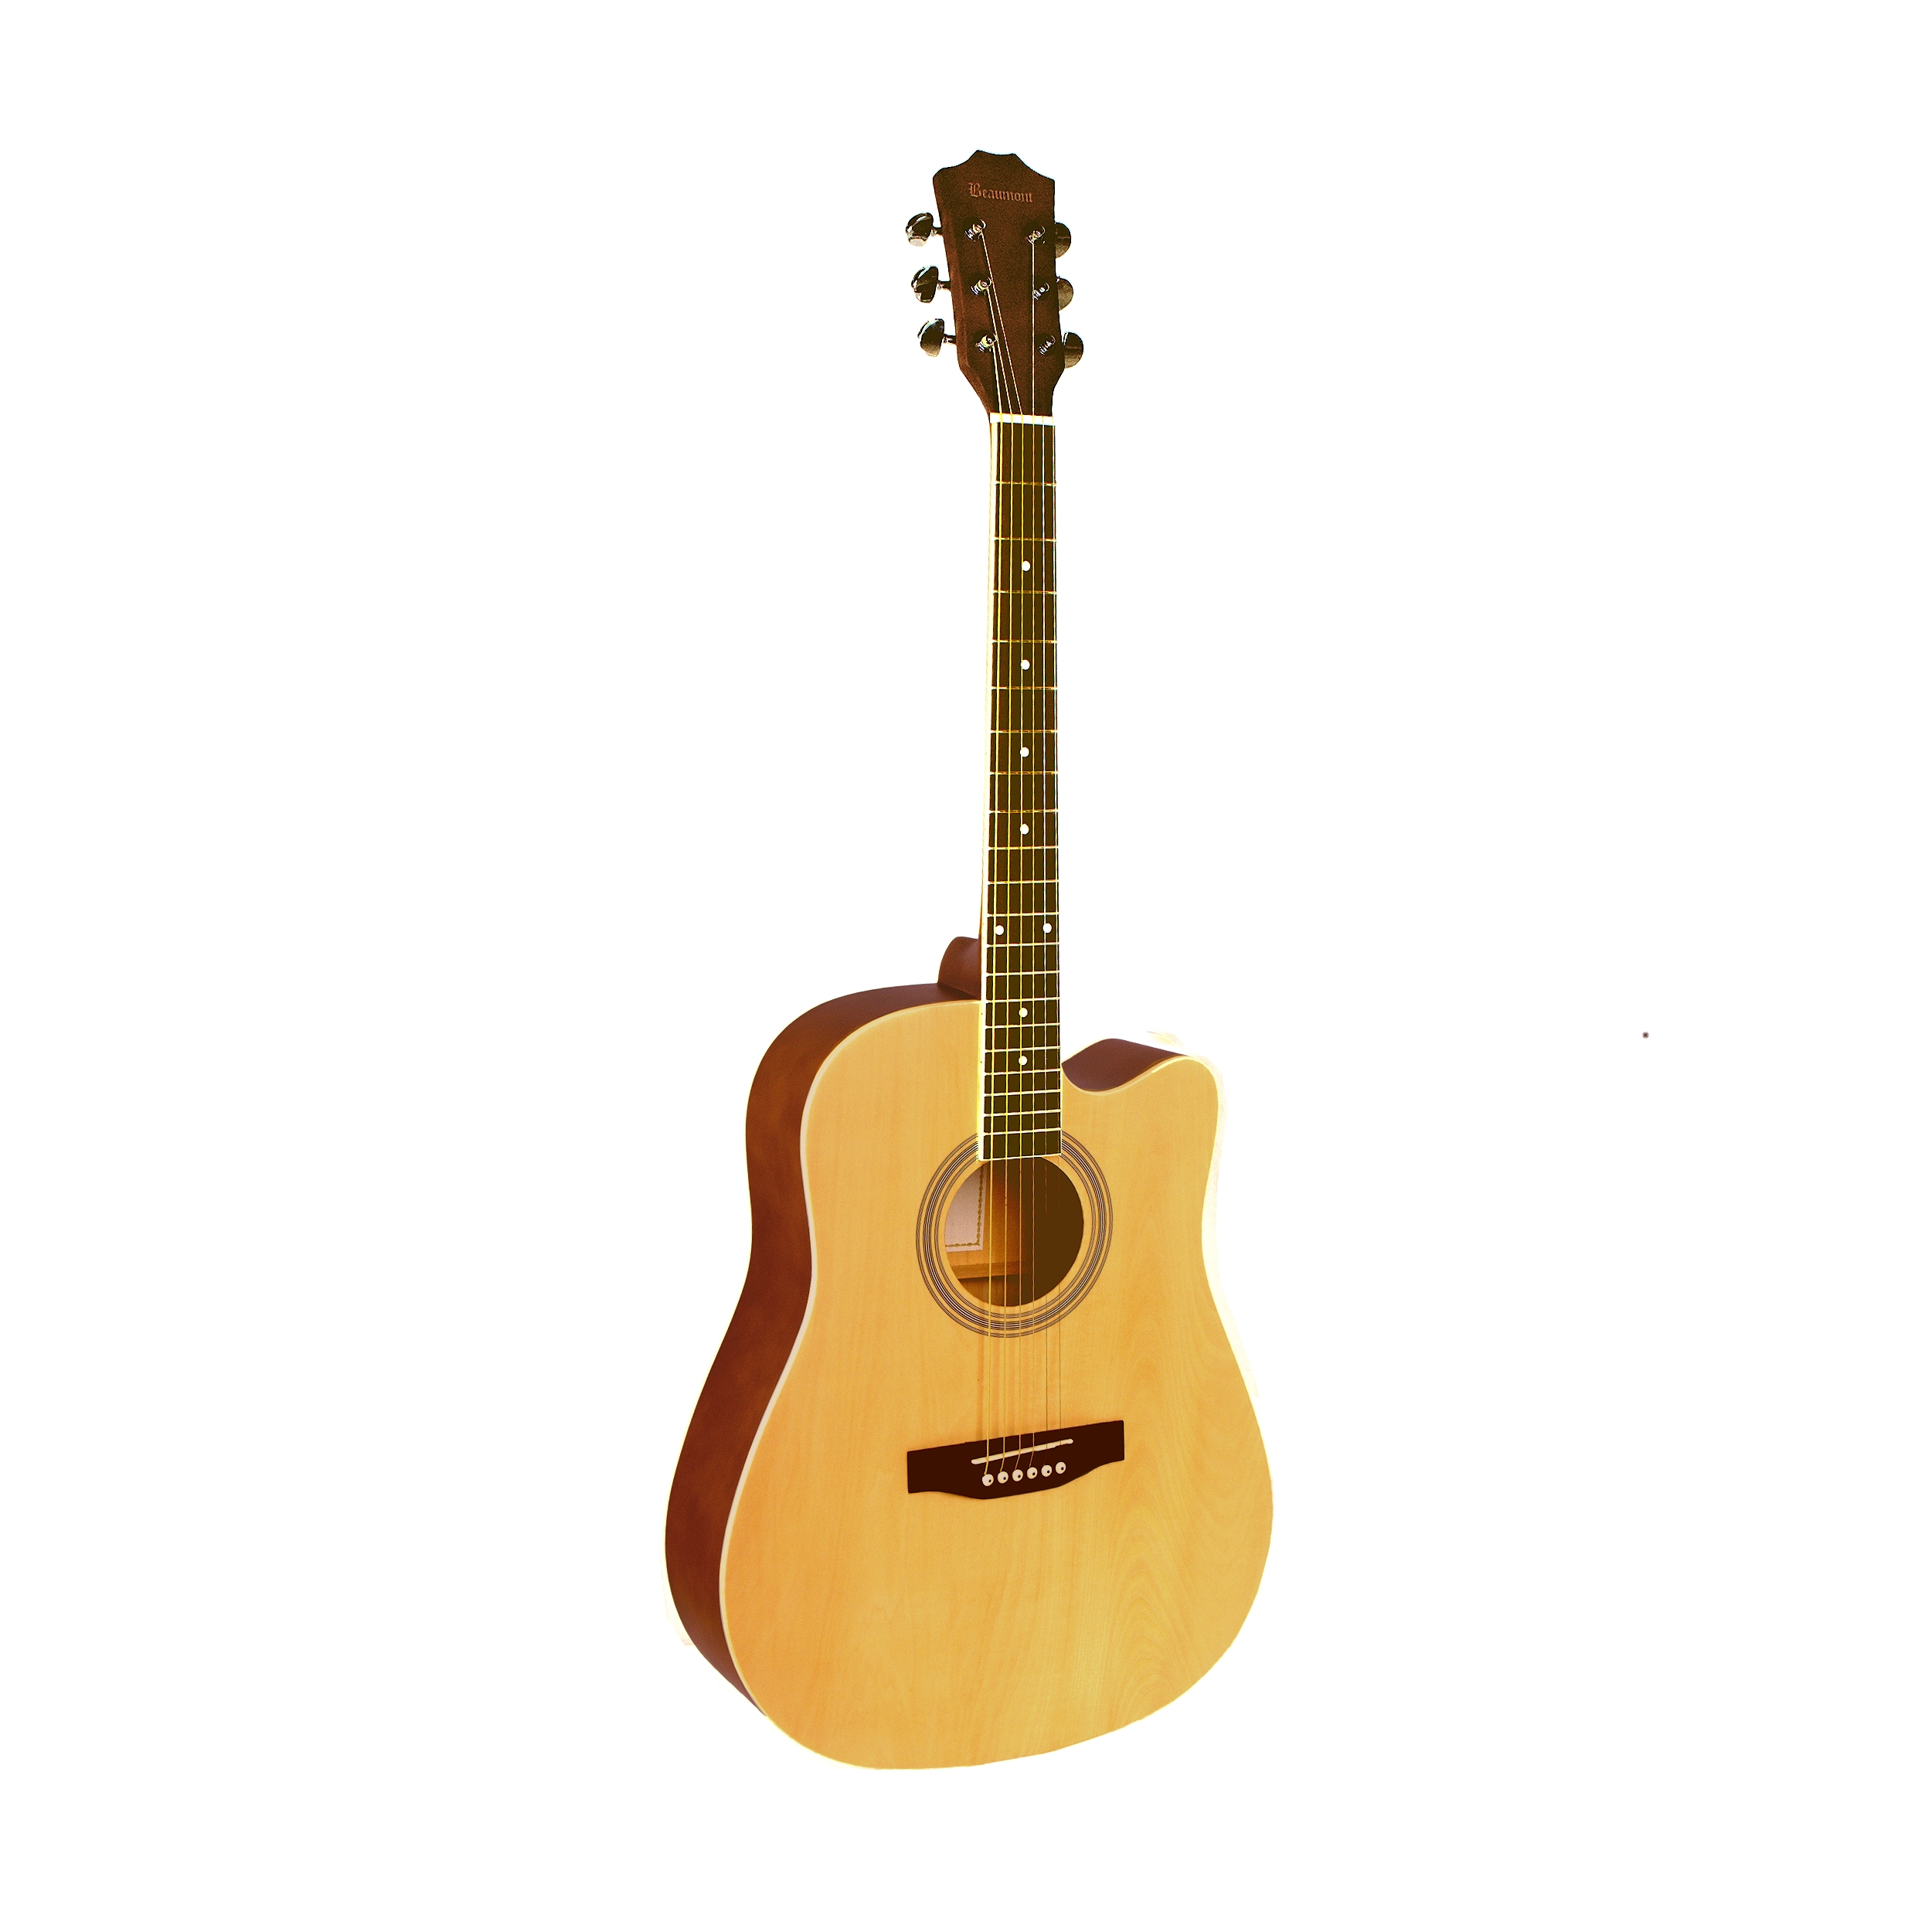 Акустические гитары Beaumont DG141 гитара акустическая санберст 97см с вырезом